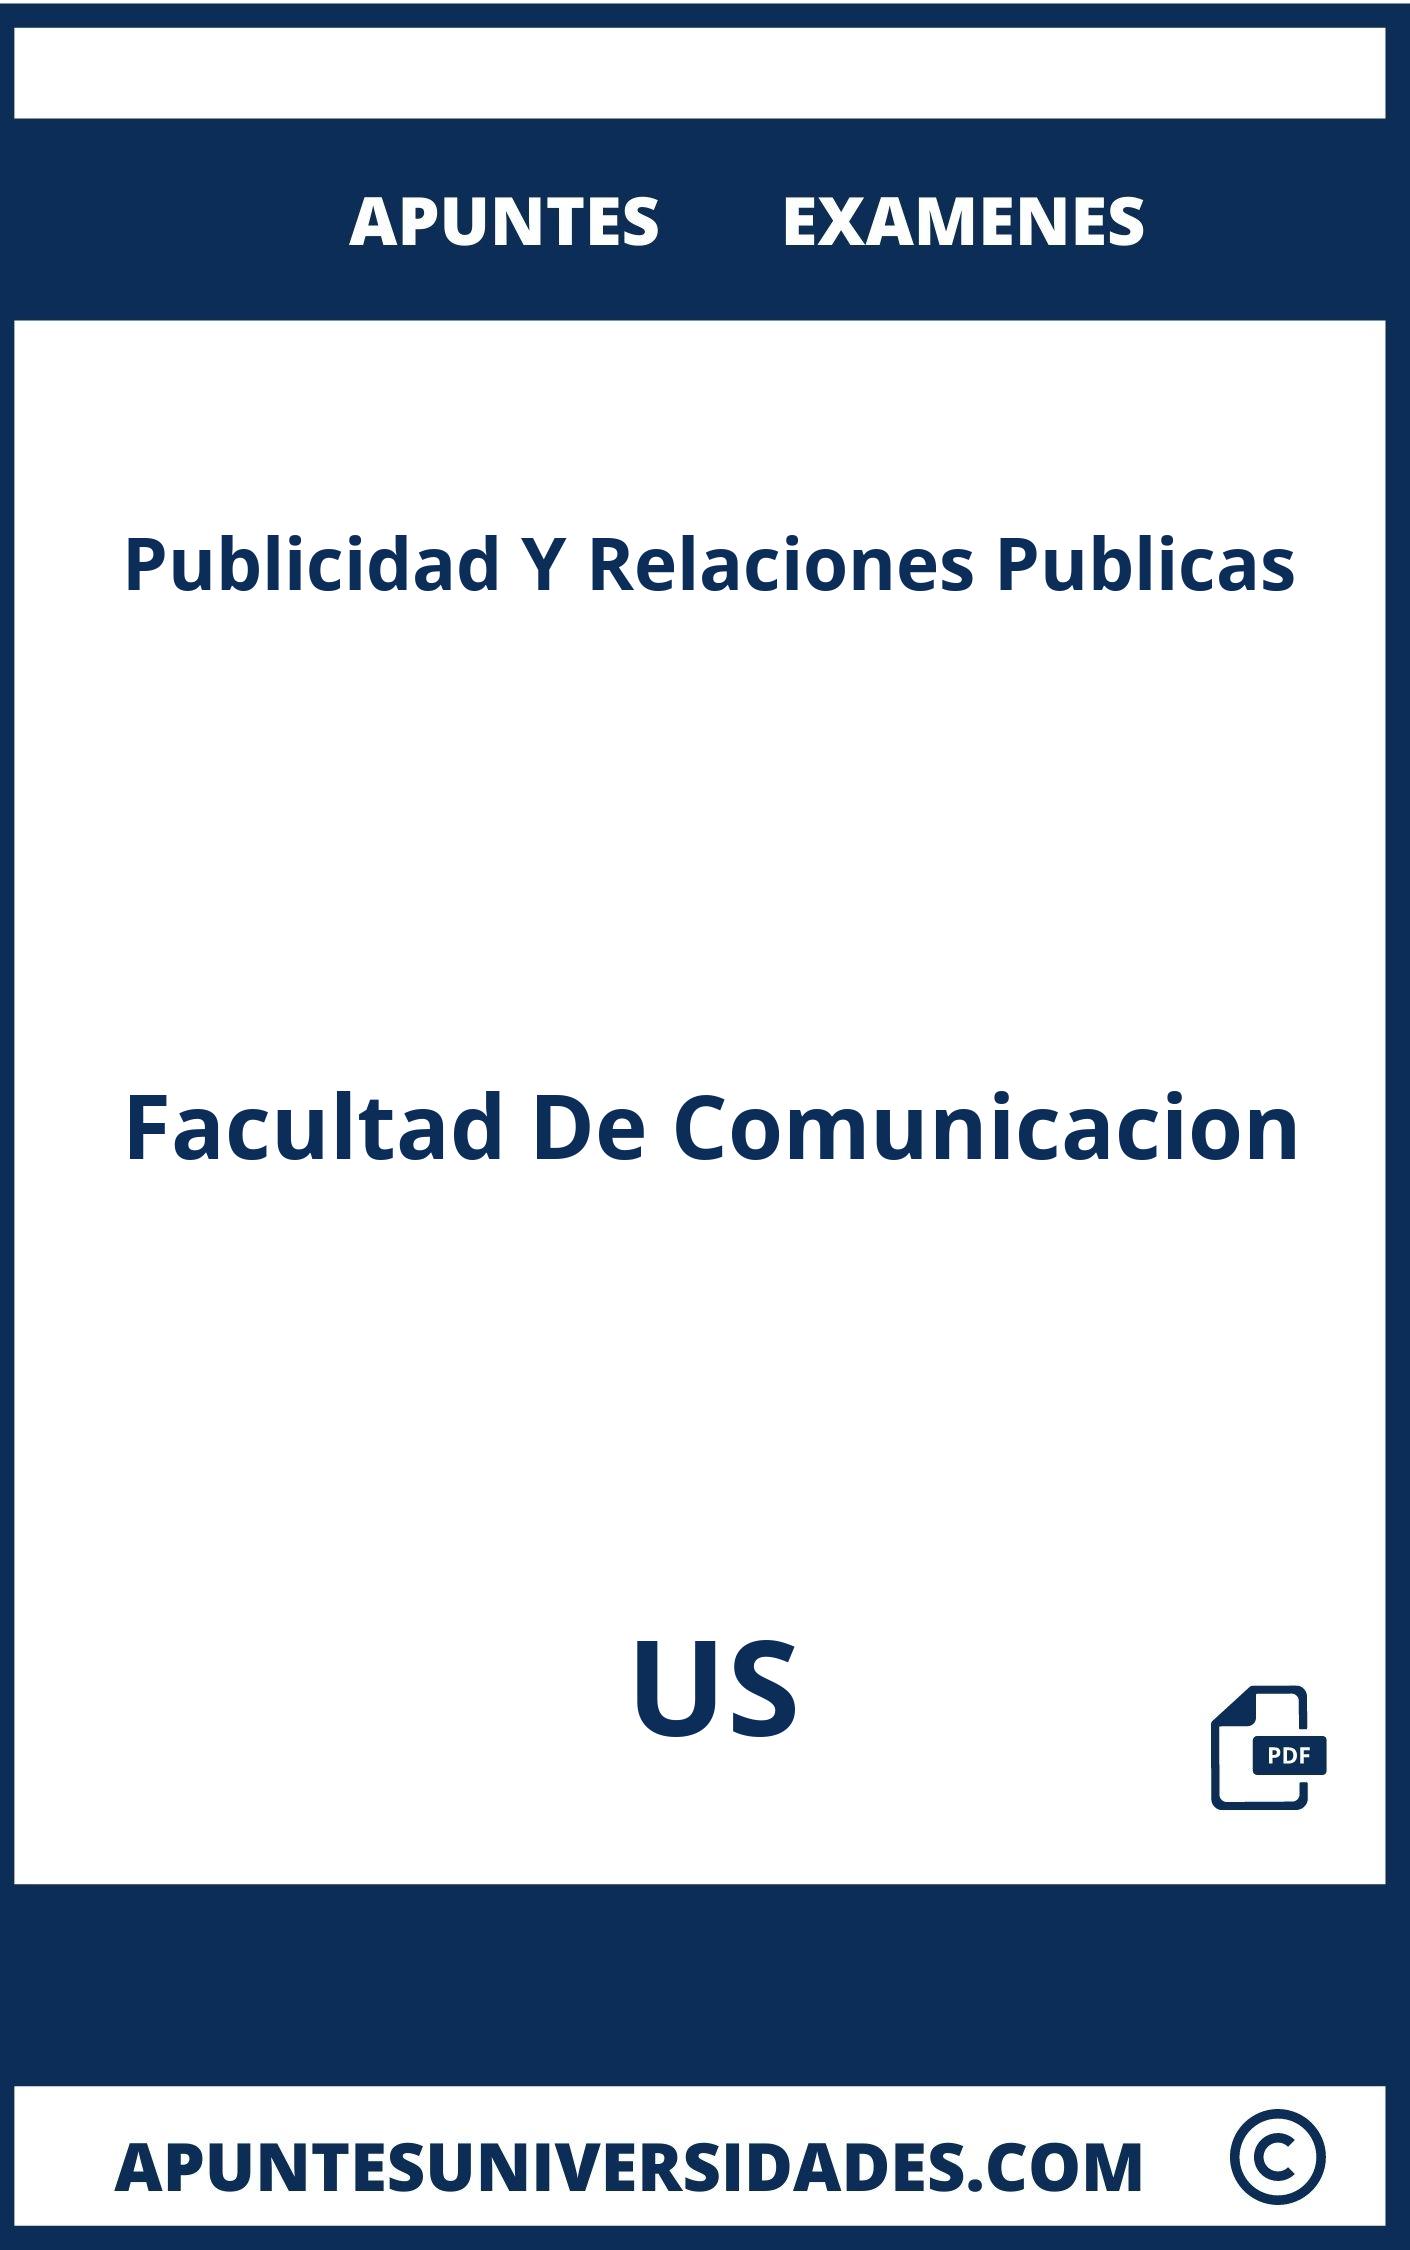 Apuntes y Examenes de Publicidad Y Relaciones Publicas US